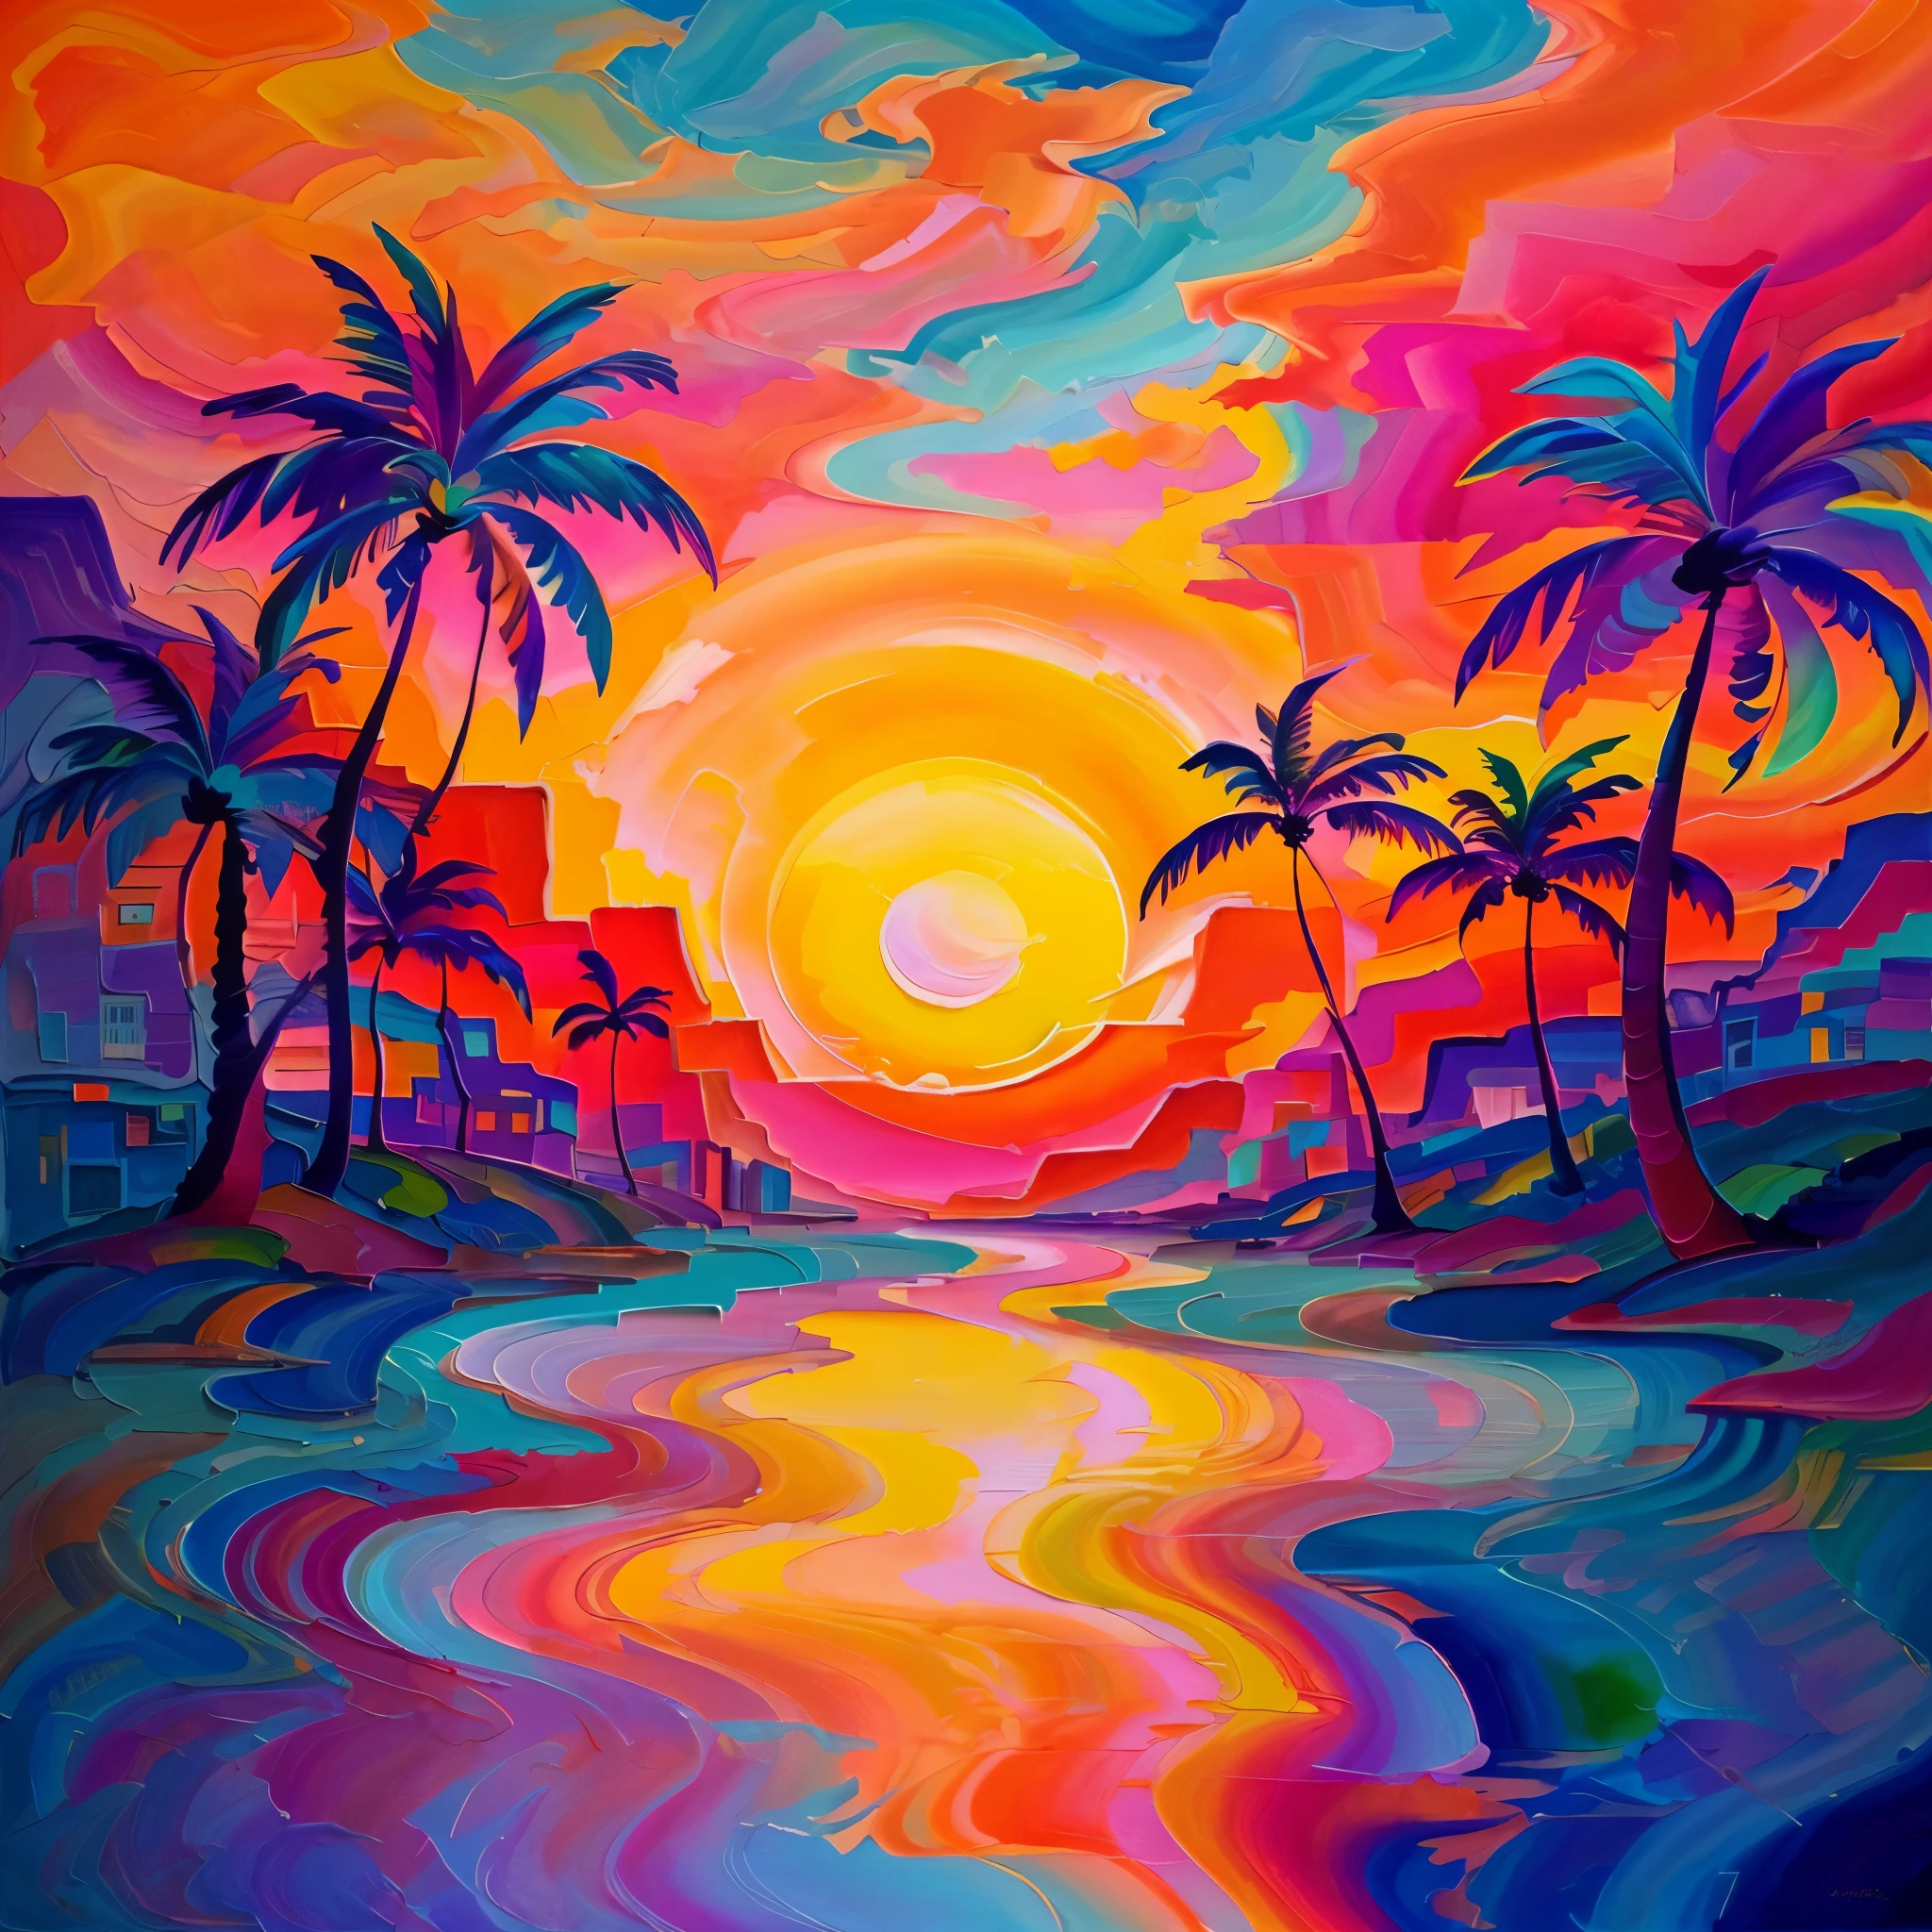 一幅日落、棕櫚樹和水體的畫作, 美麗的藝術, 抽象的風景, 只是個玩笑, 令人驚嘆的藝術風格, 充滿活力的數位繪畫, 迷幻的日落, 充滿活力的水粉畫風景, 日落插畫, kilian eng 鮮豔的色彩, kilian eng 鮮豔的色彩, 充滿活力的日落, 多彩的夕陽,  迷幻風景, 8K 令人驚嘆的藝術